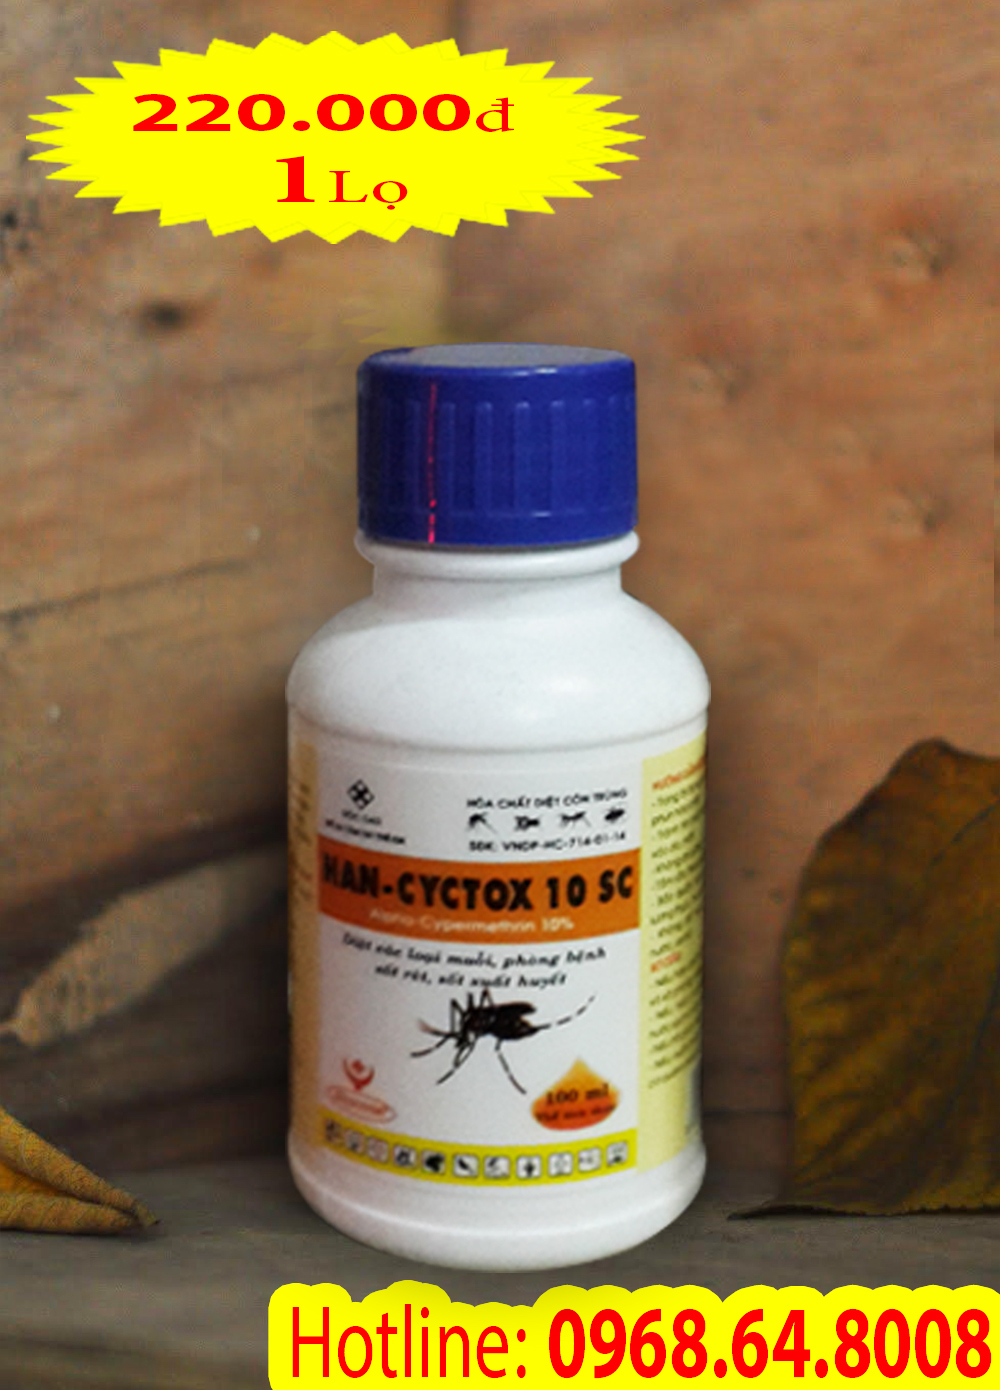 Han Cyctox 10SC (100ml) - (Hàng VIỆT NAM) - Thuốc diệt côn trùng, muỗi, gián, ruồi, kiến, bọ chét...